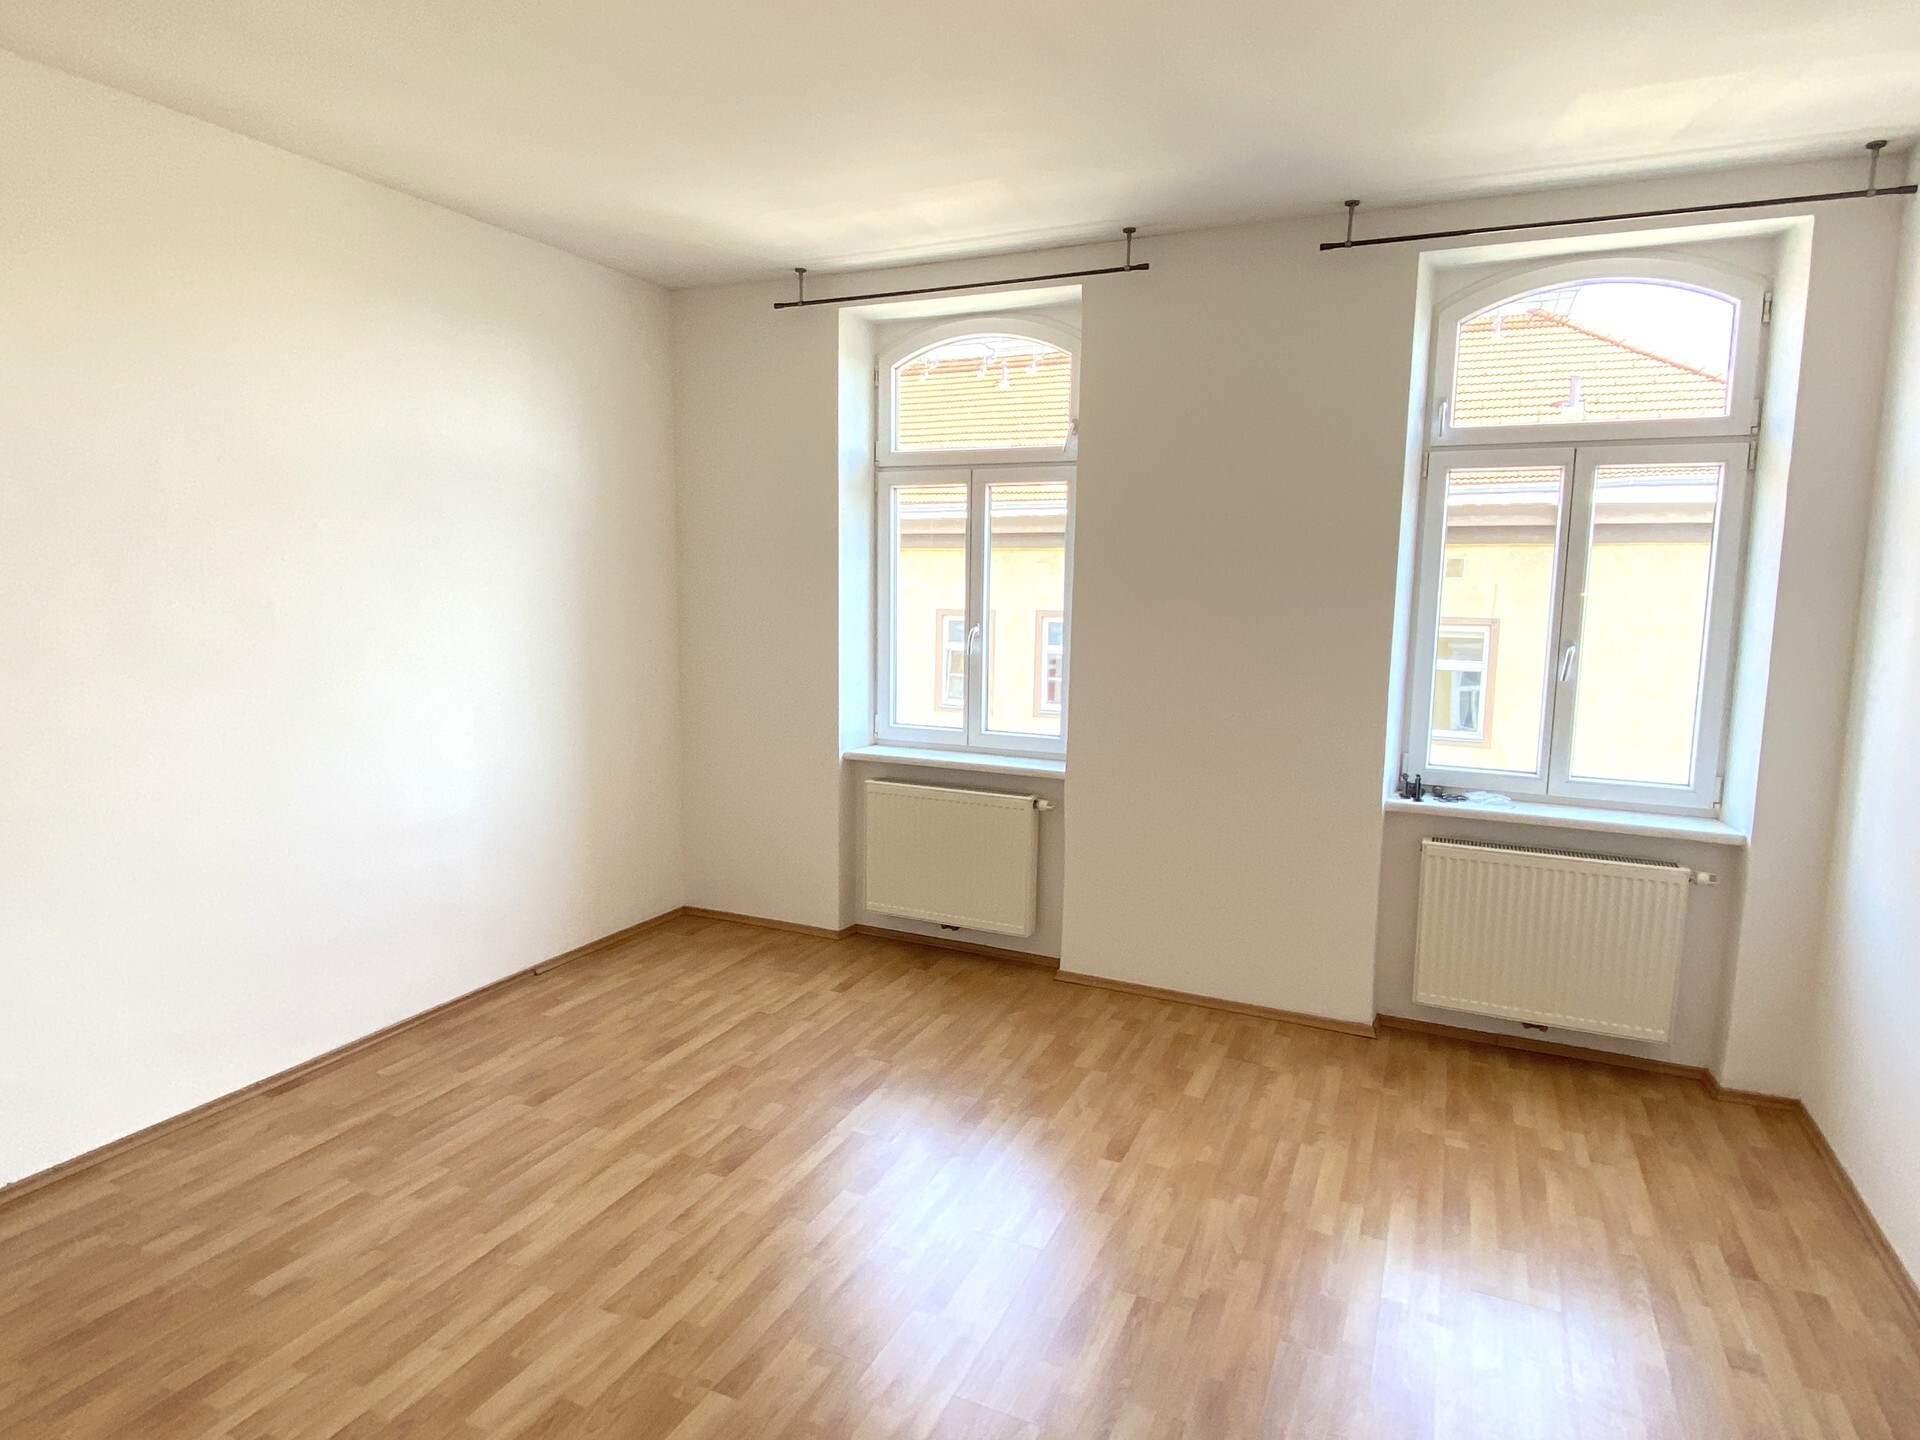 Hübsche 2-Zimmer-Altbauwohnung, Nähe Westbahnhof in 1150 Wien zu mieten